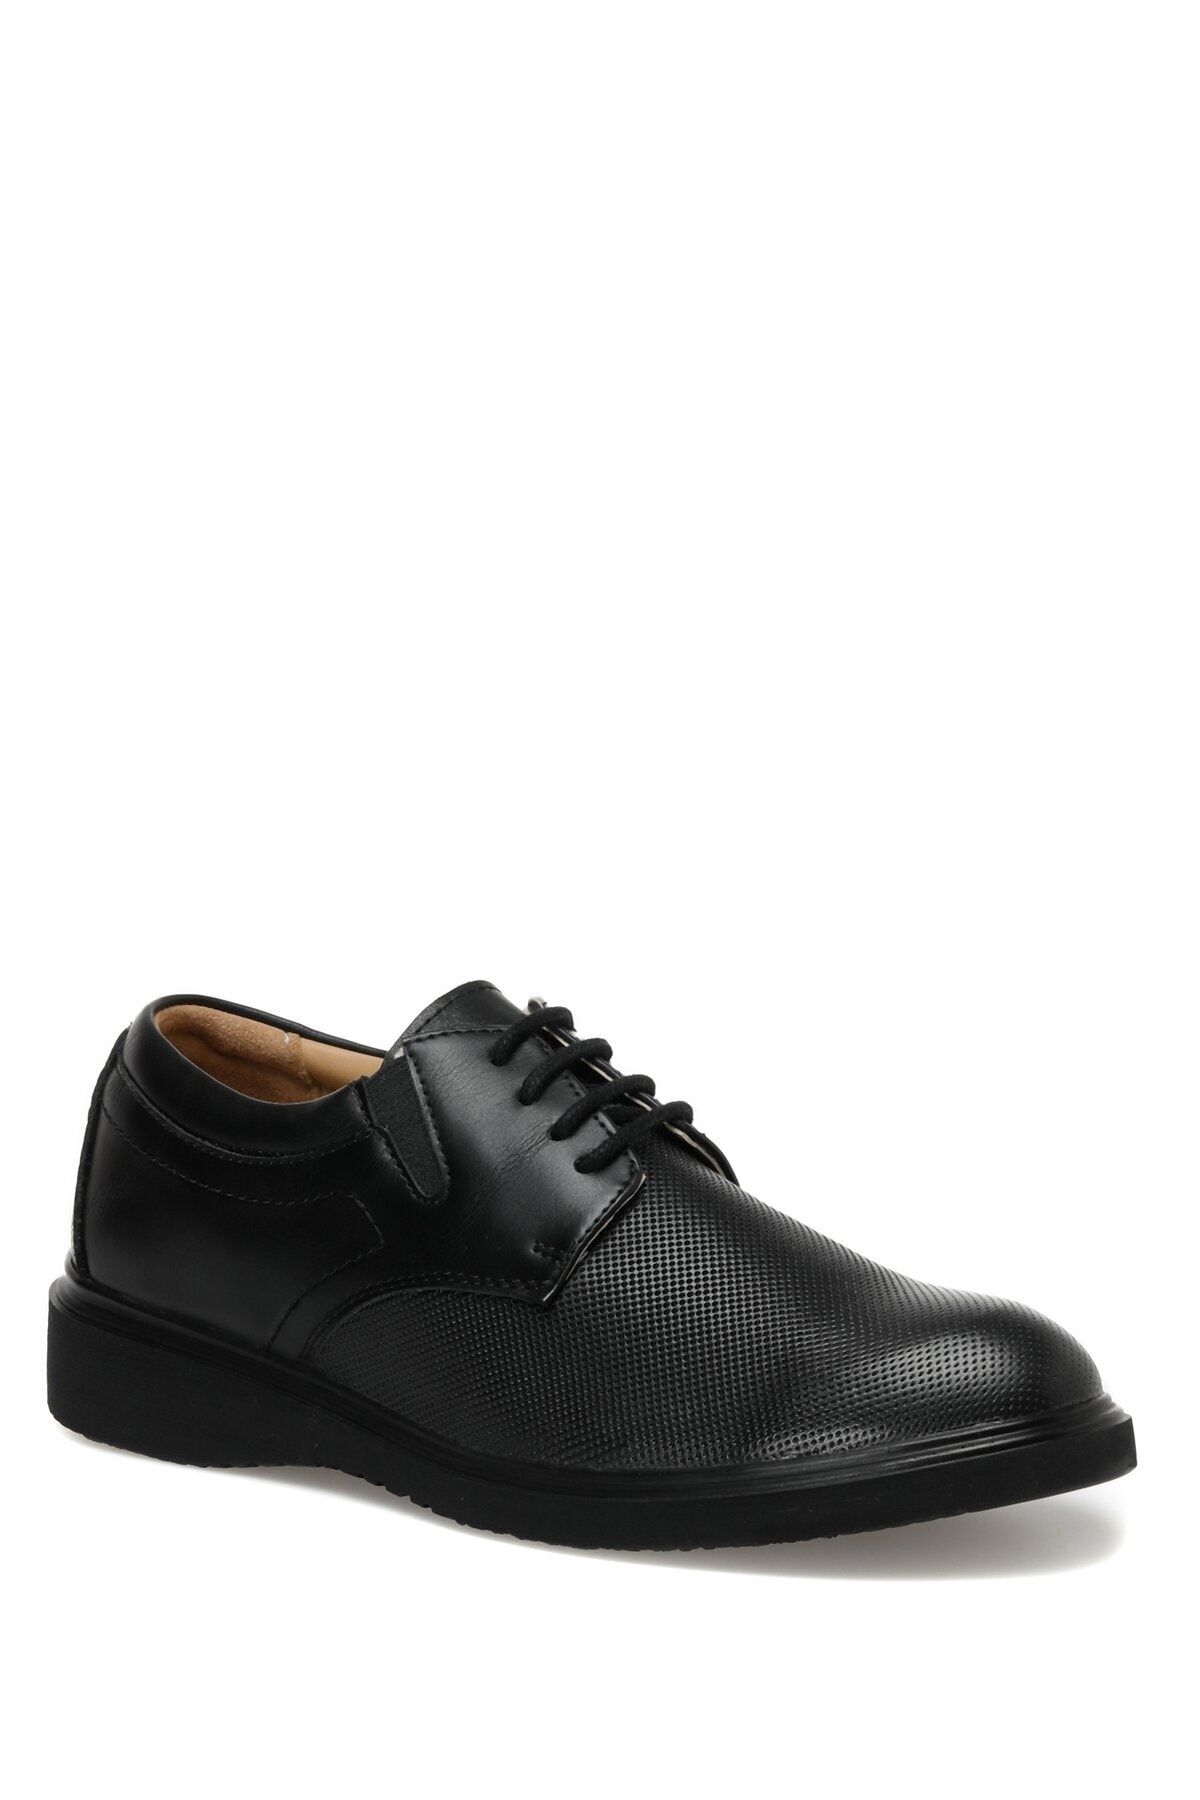 Garamond Pesi 3fx Siyah Erkek Klasik Ayakkabı